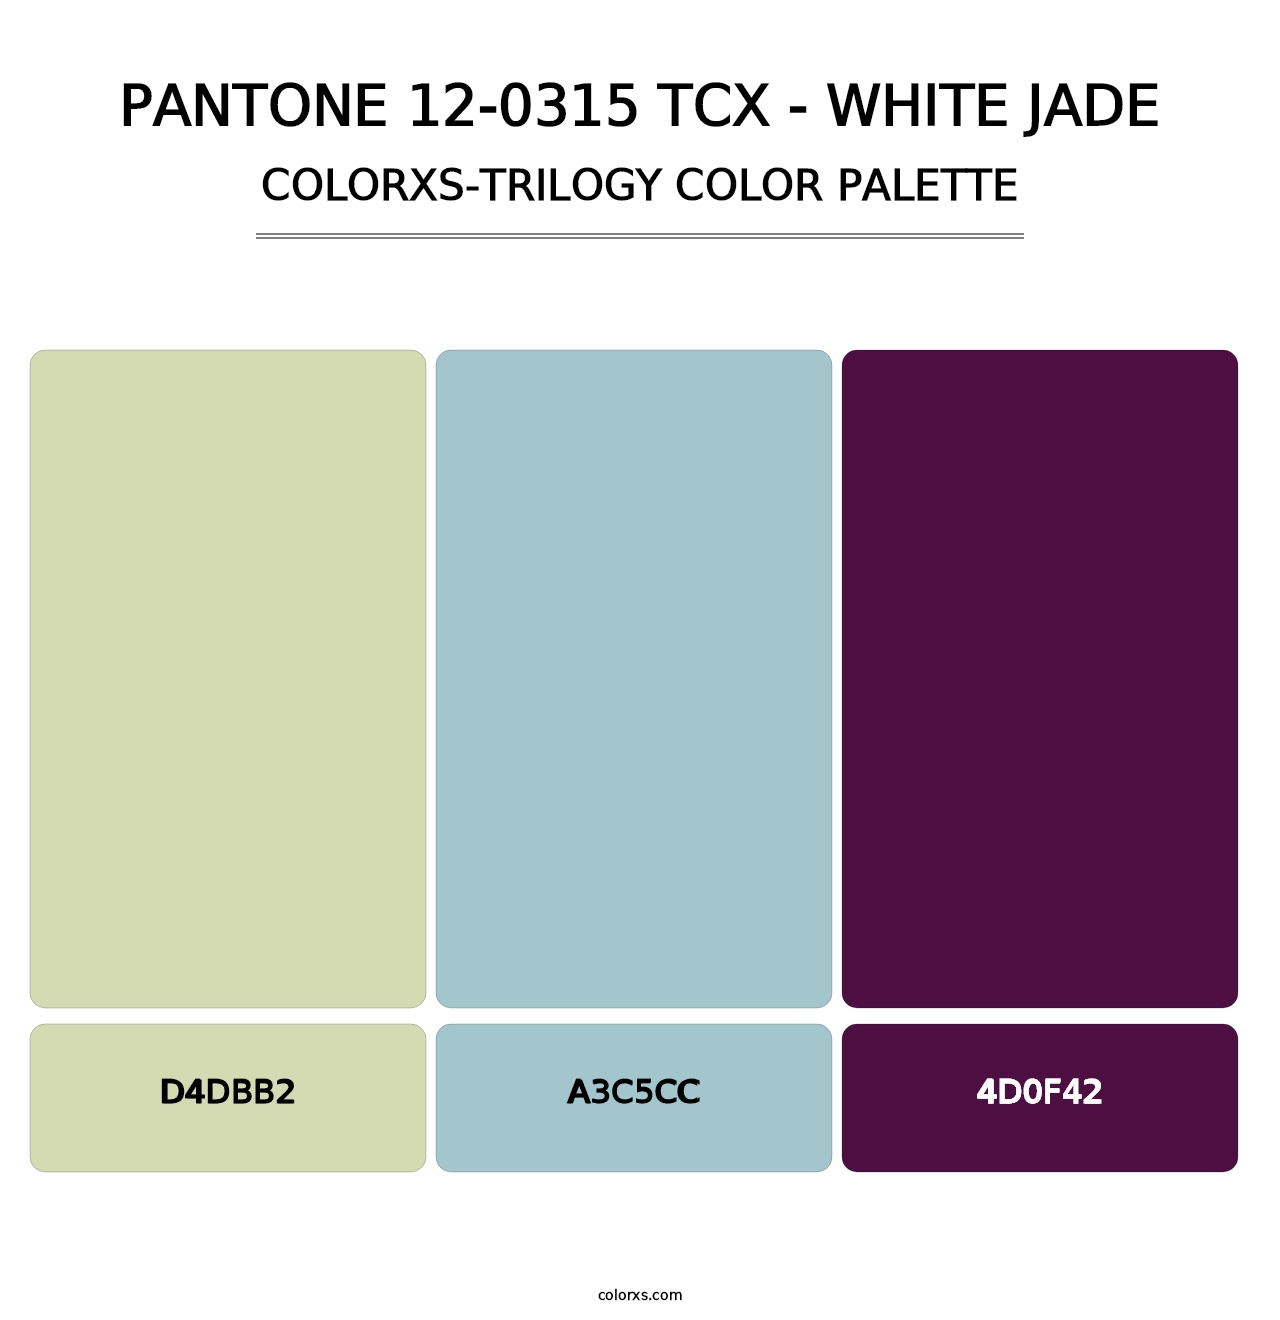 PANTONE 12-0315 TCX - White Jade - Colorxs Trilogy Palette